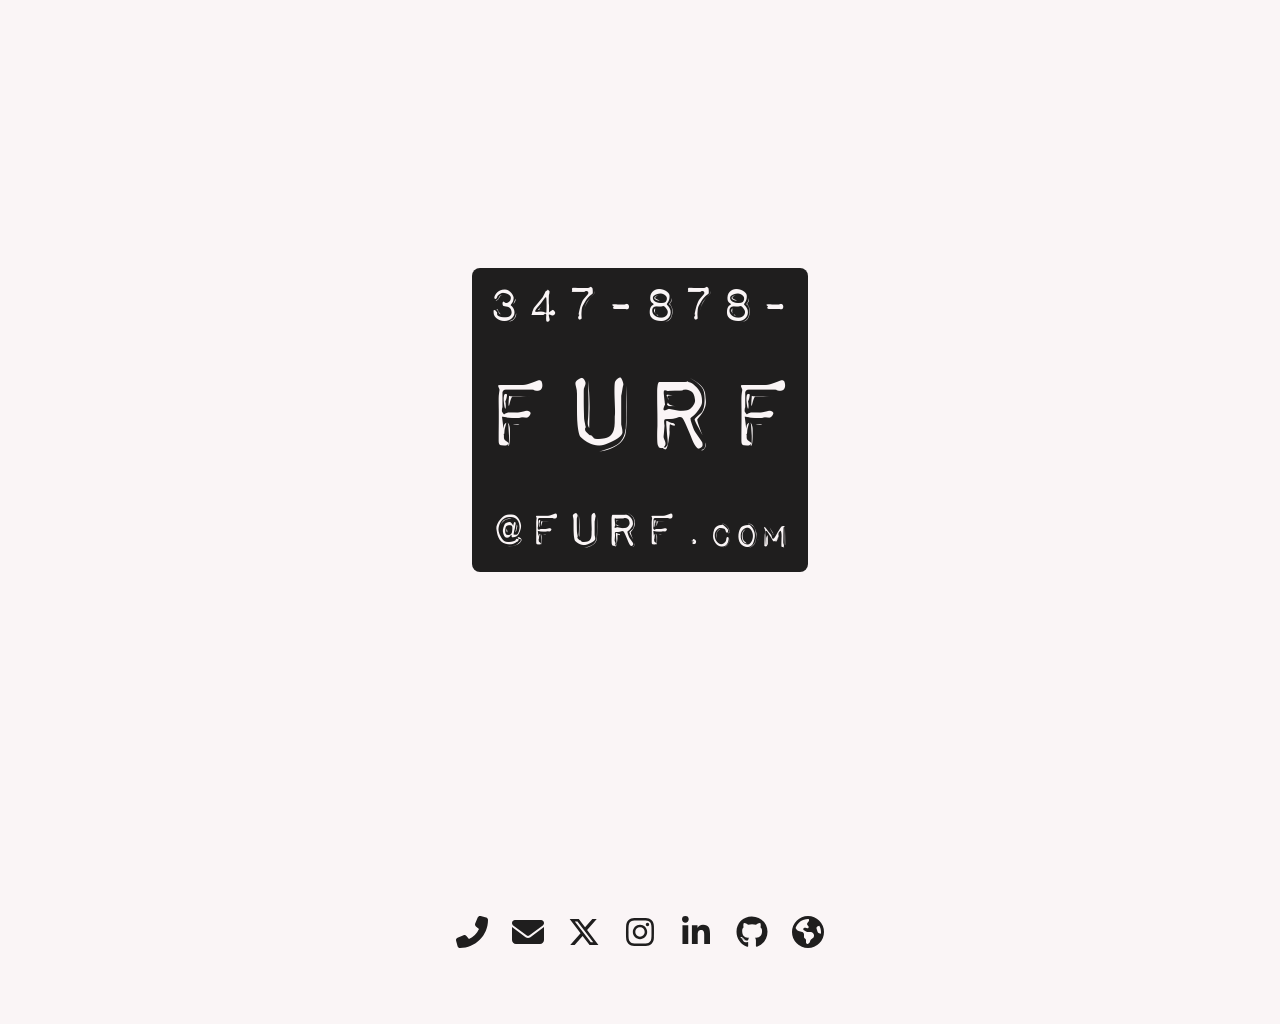 furf.com